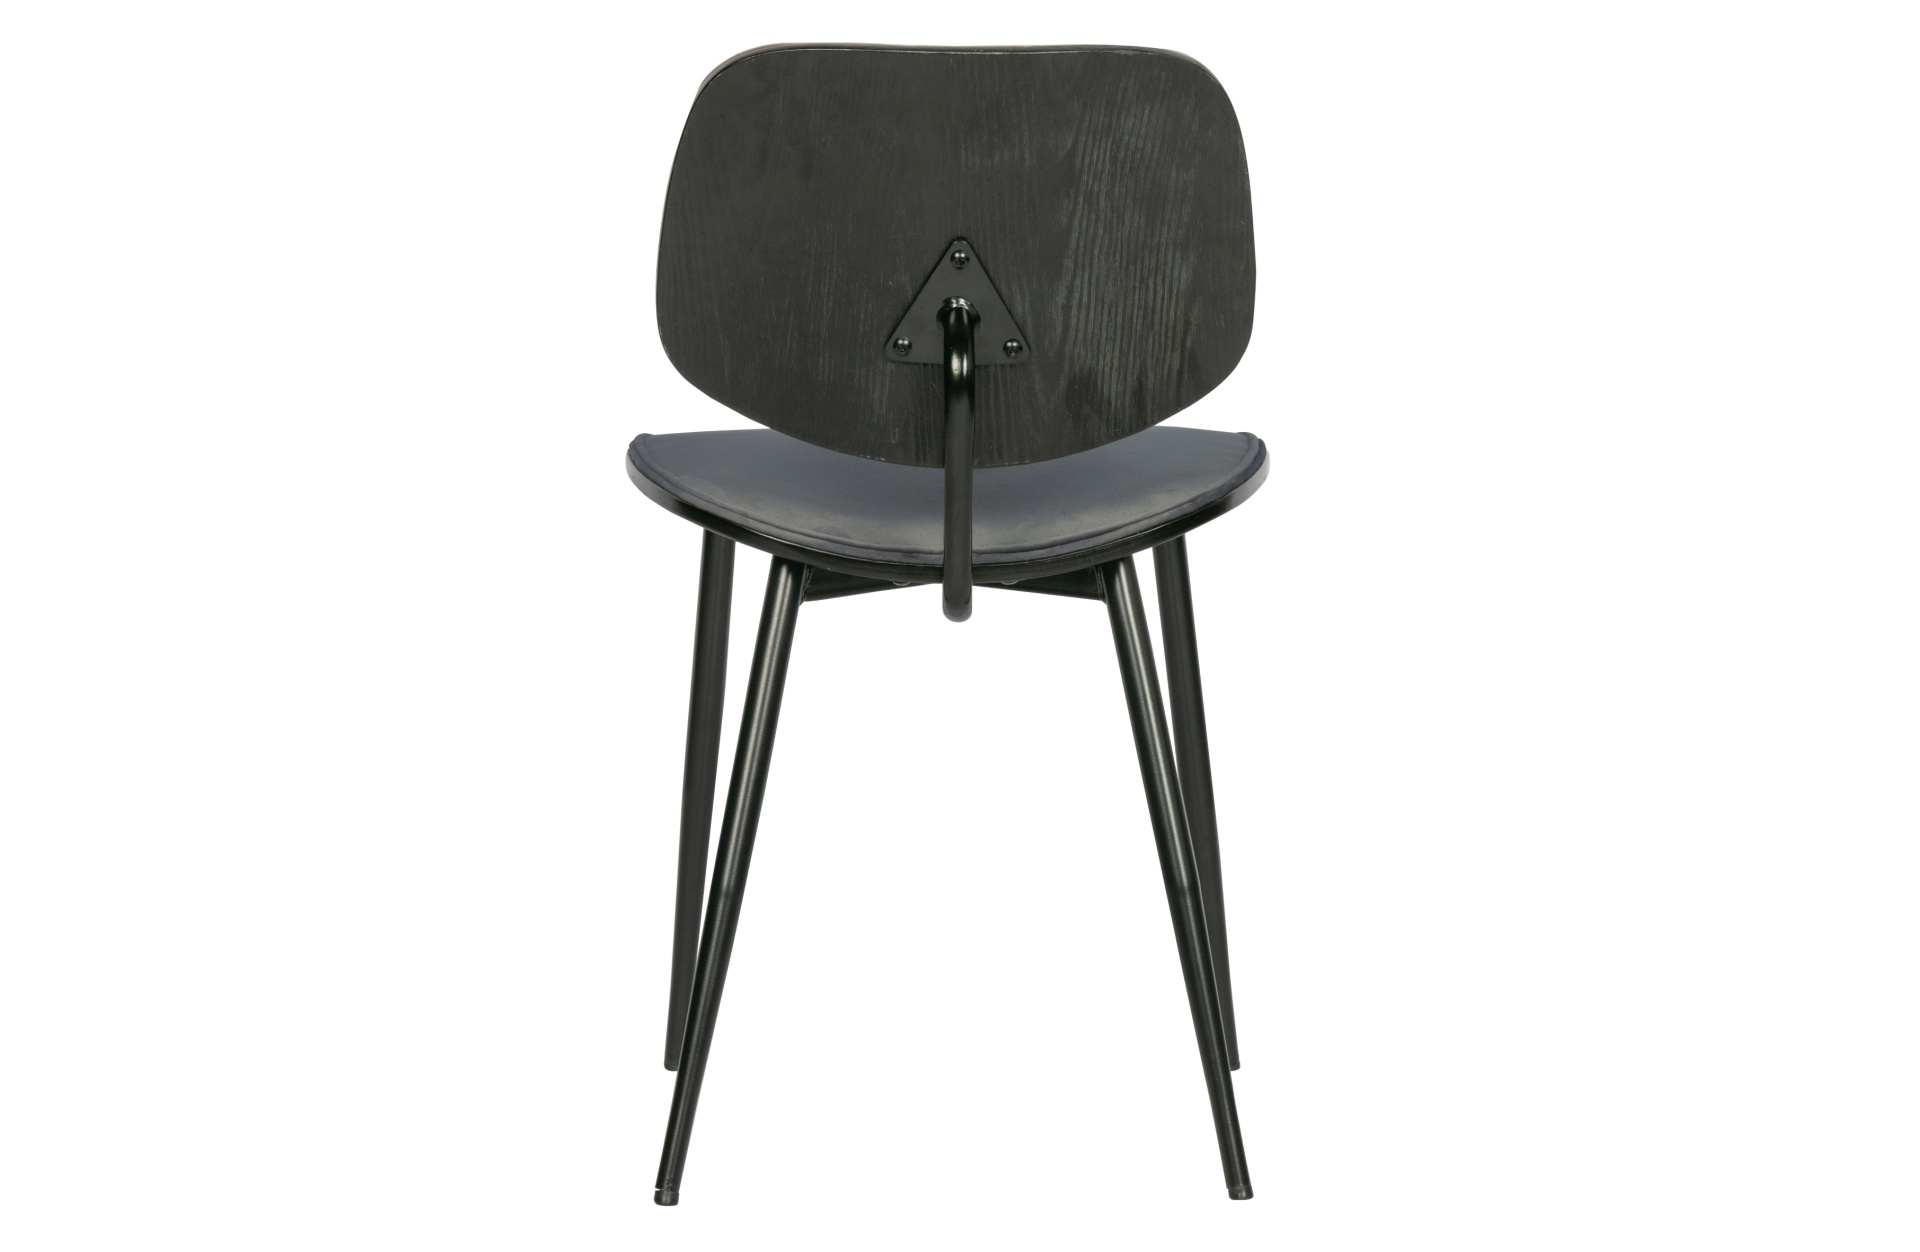 Der Esszimmerstuhl Jackie überzeugt mit seinem modernen Design. Gefertigt wurde er aus Samt, welches einen grauen Farbton besitzt. Das Gestell ist aus Metall und hat eine schwarze Farbe. Der Stuhl verfügt über eine Sitzhöhe von 47 cm.